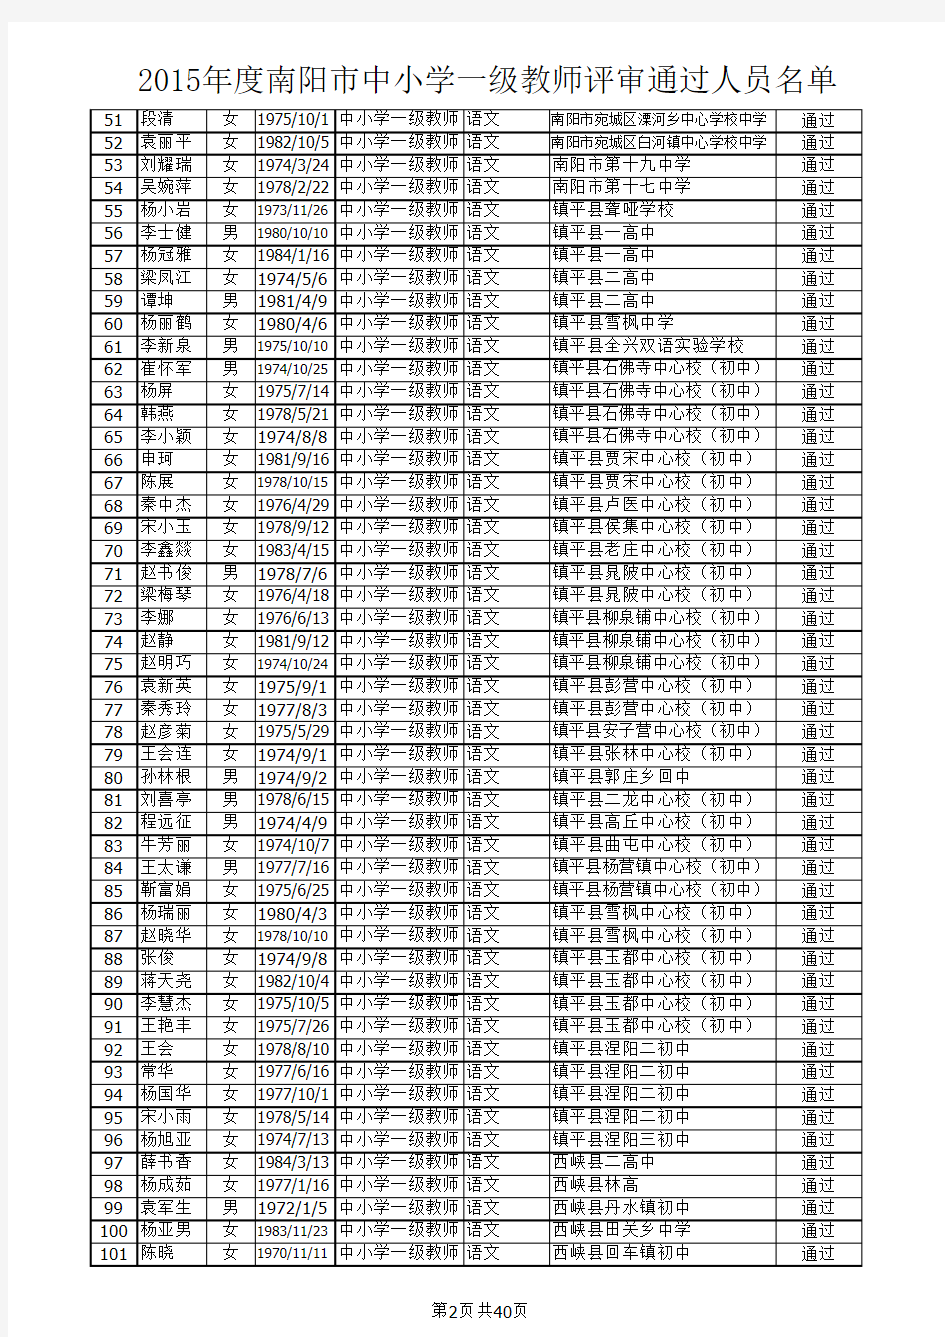 2015年度南阳市中小学一级教师评审通过人员名单(2016.1